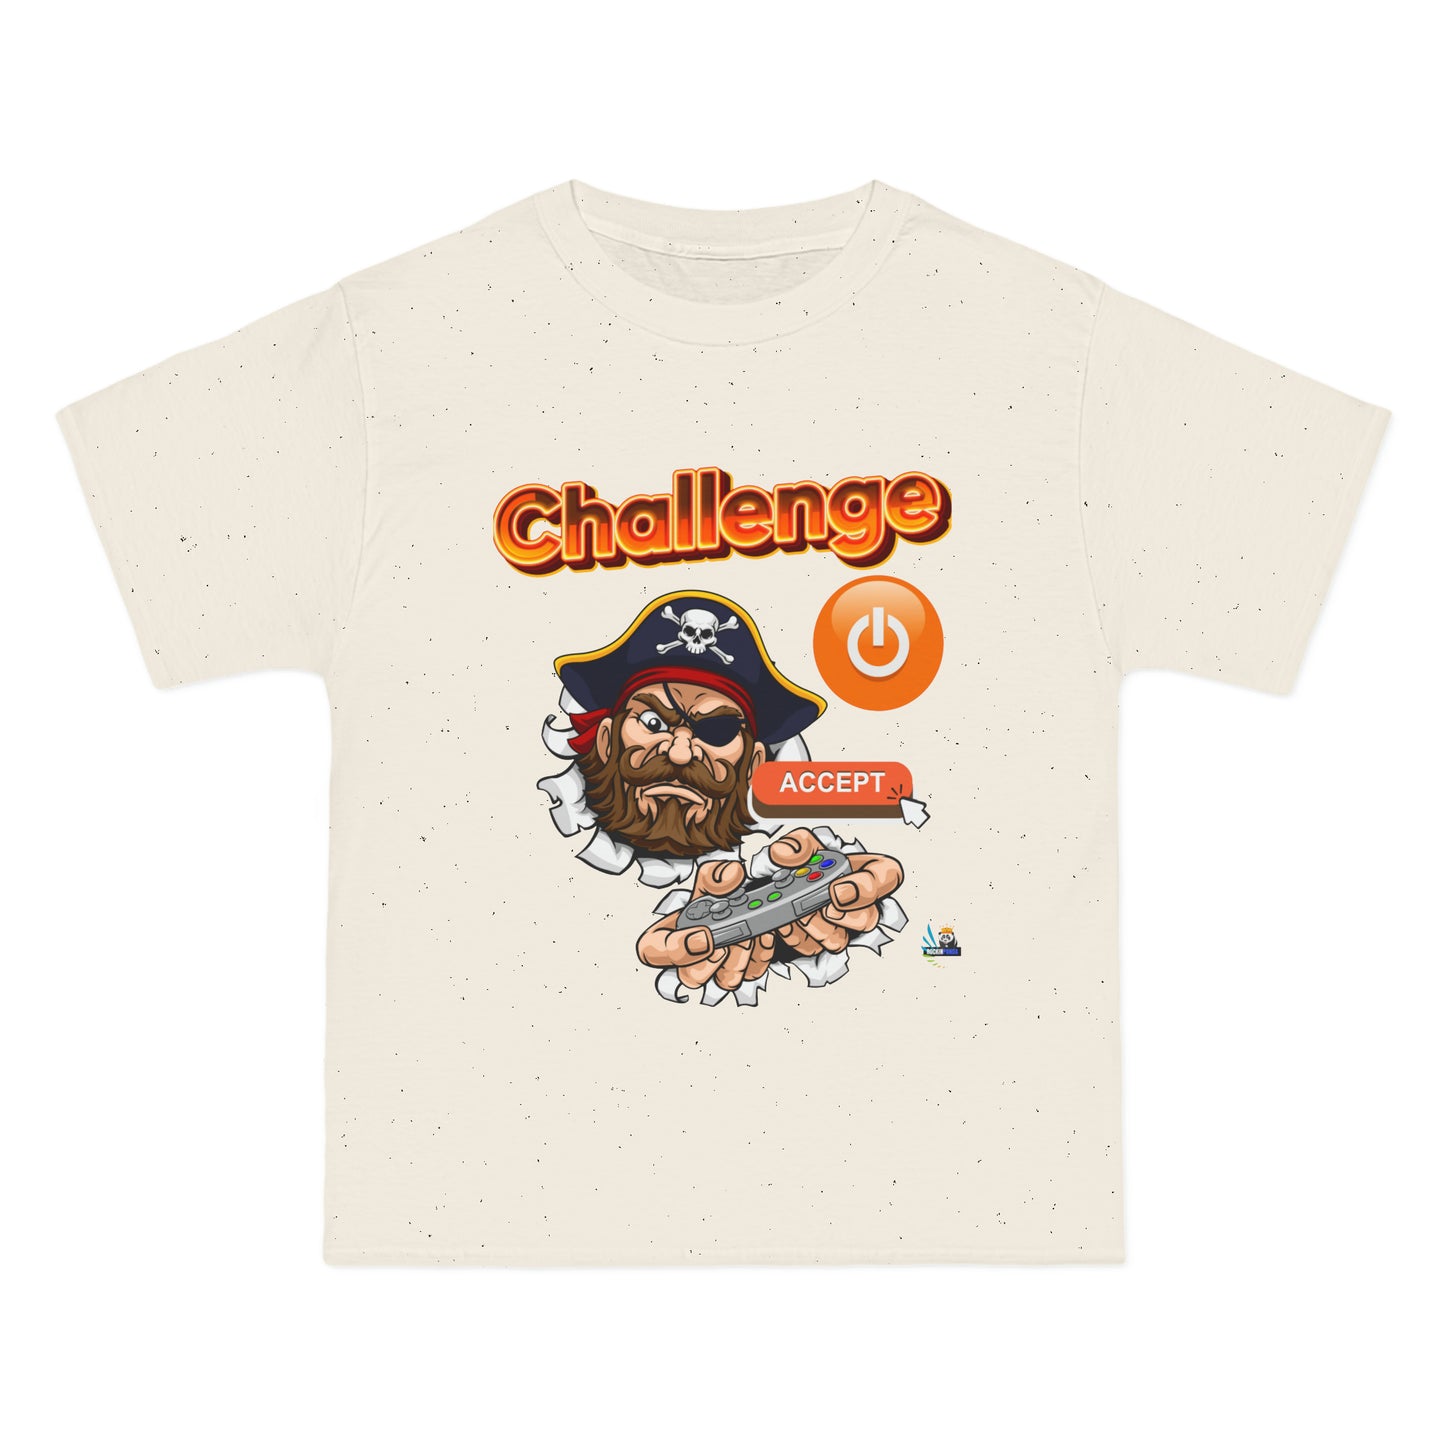 Camiseta para juegos unisex de peso pesado Challenge Accepted Pirate Edition